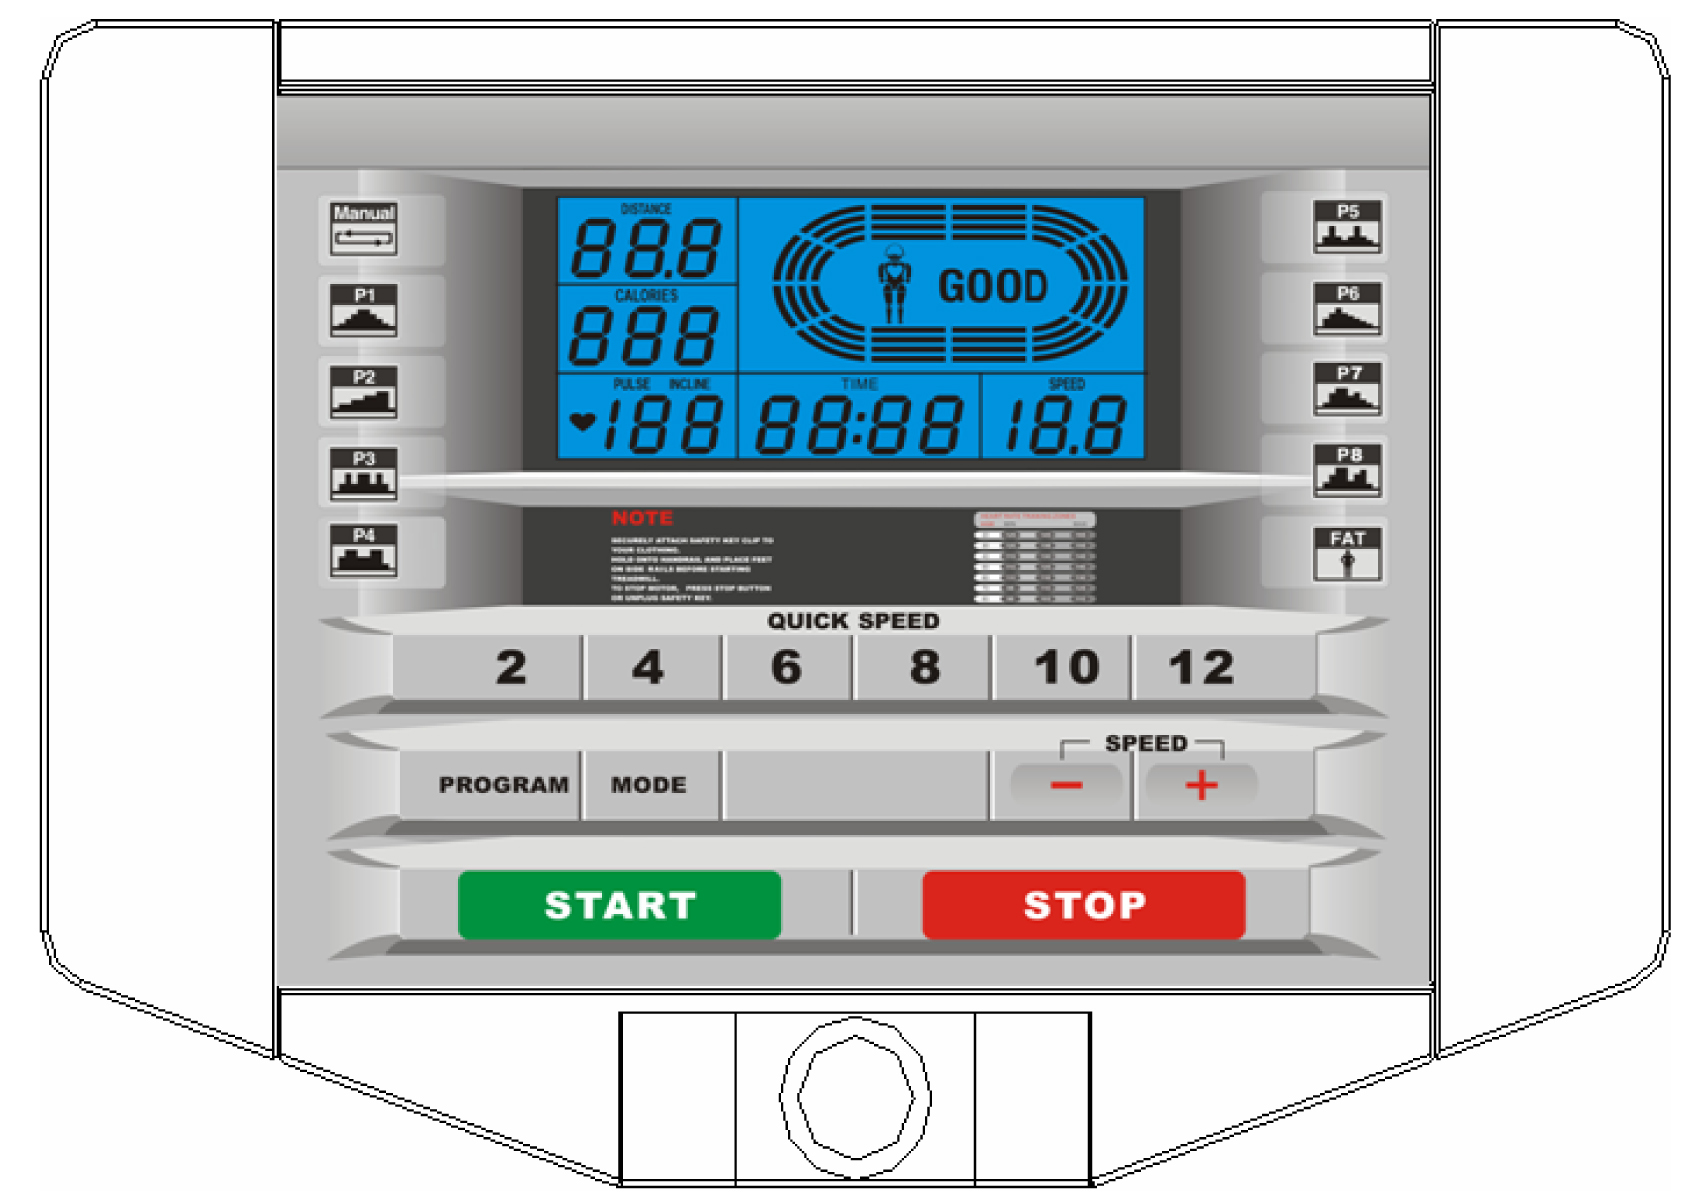 COMPUTER 1. Beskrivelse av LCD-skjerm og knapper 1. LCD-skjermen kan vise følgende informasjon: TIME (Tid), SPEED (Hastighet), DISTANCE (Distanse), CALORIE (Kaloriforbrenning) og PULSE (pulsavleser).